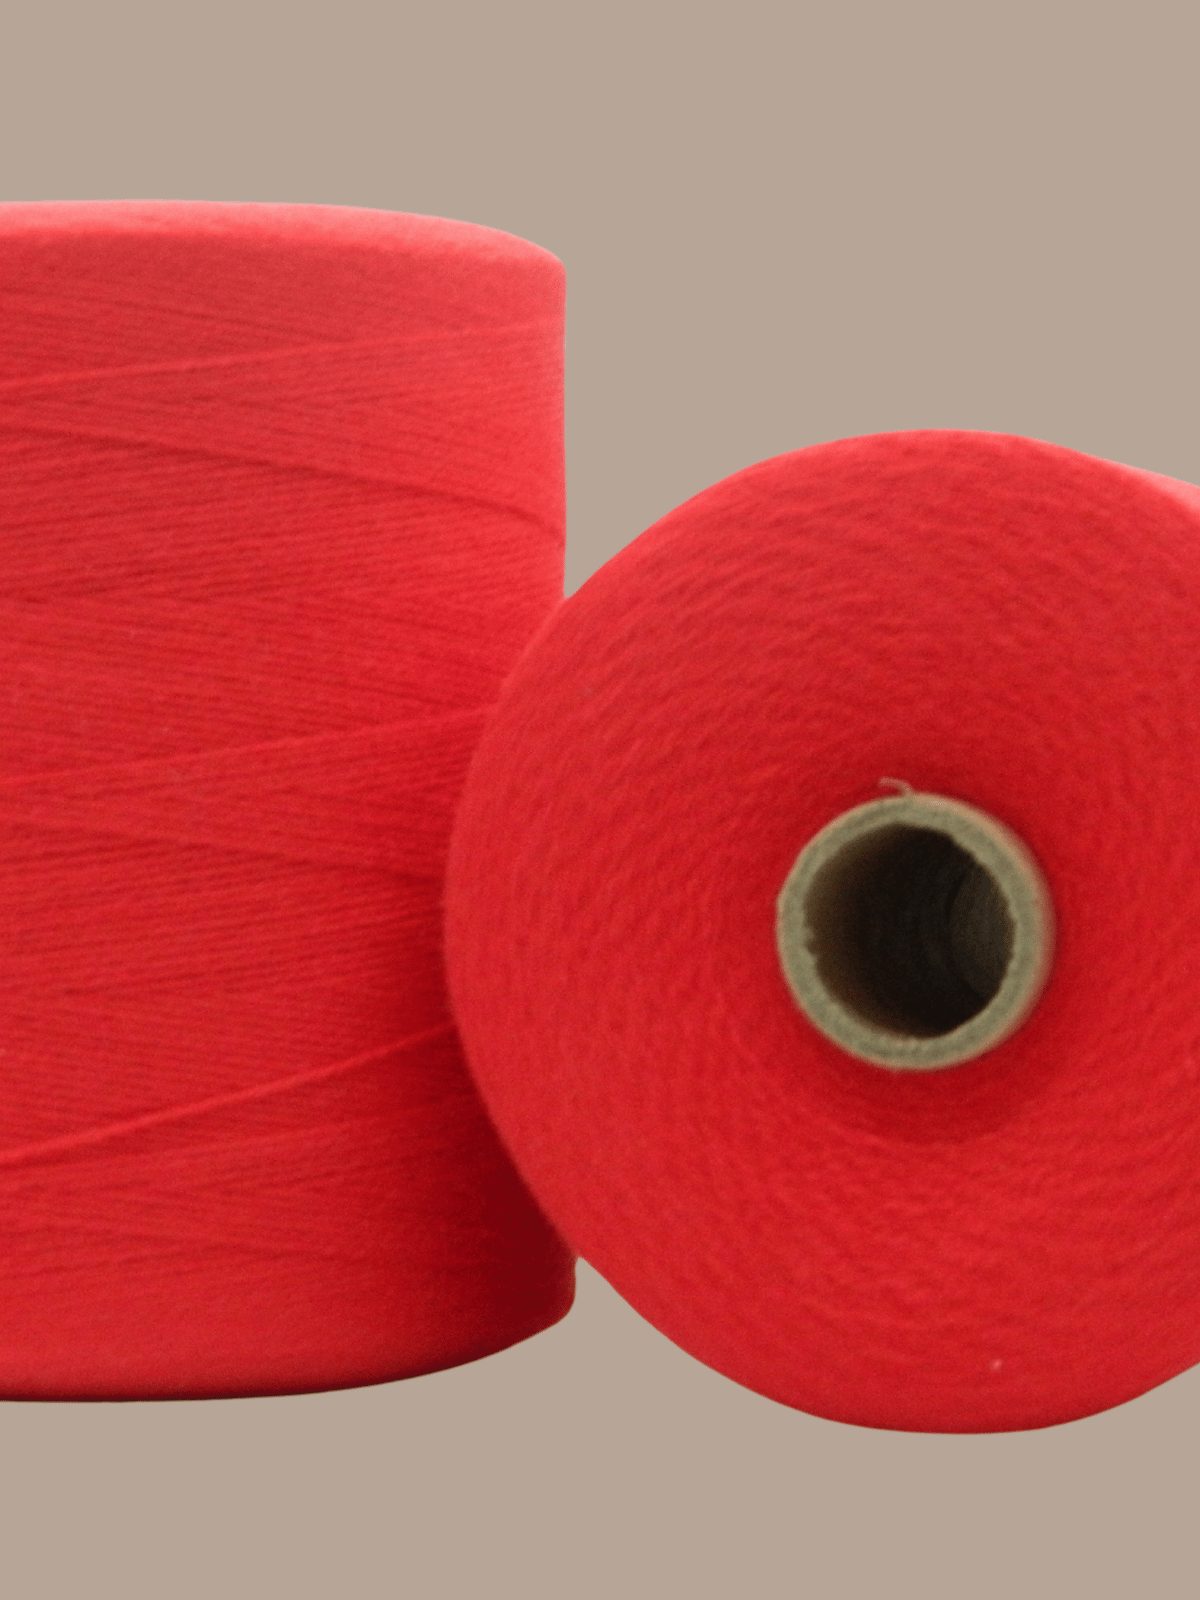 — Quebecoise 100% wool weaving yarn